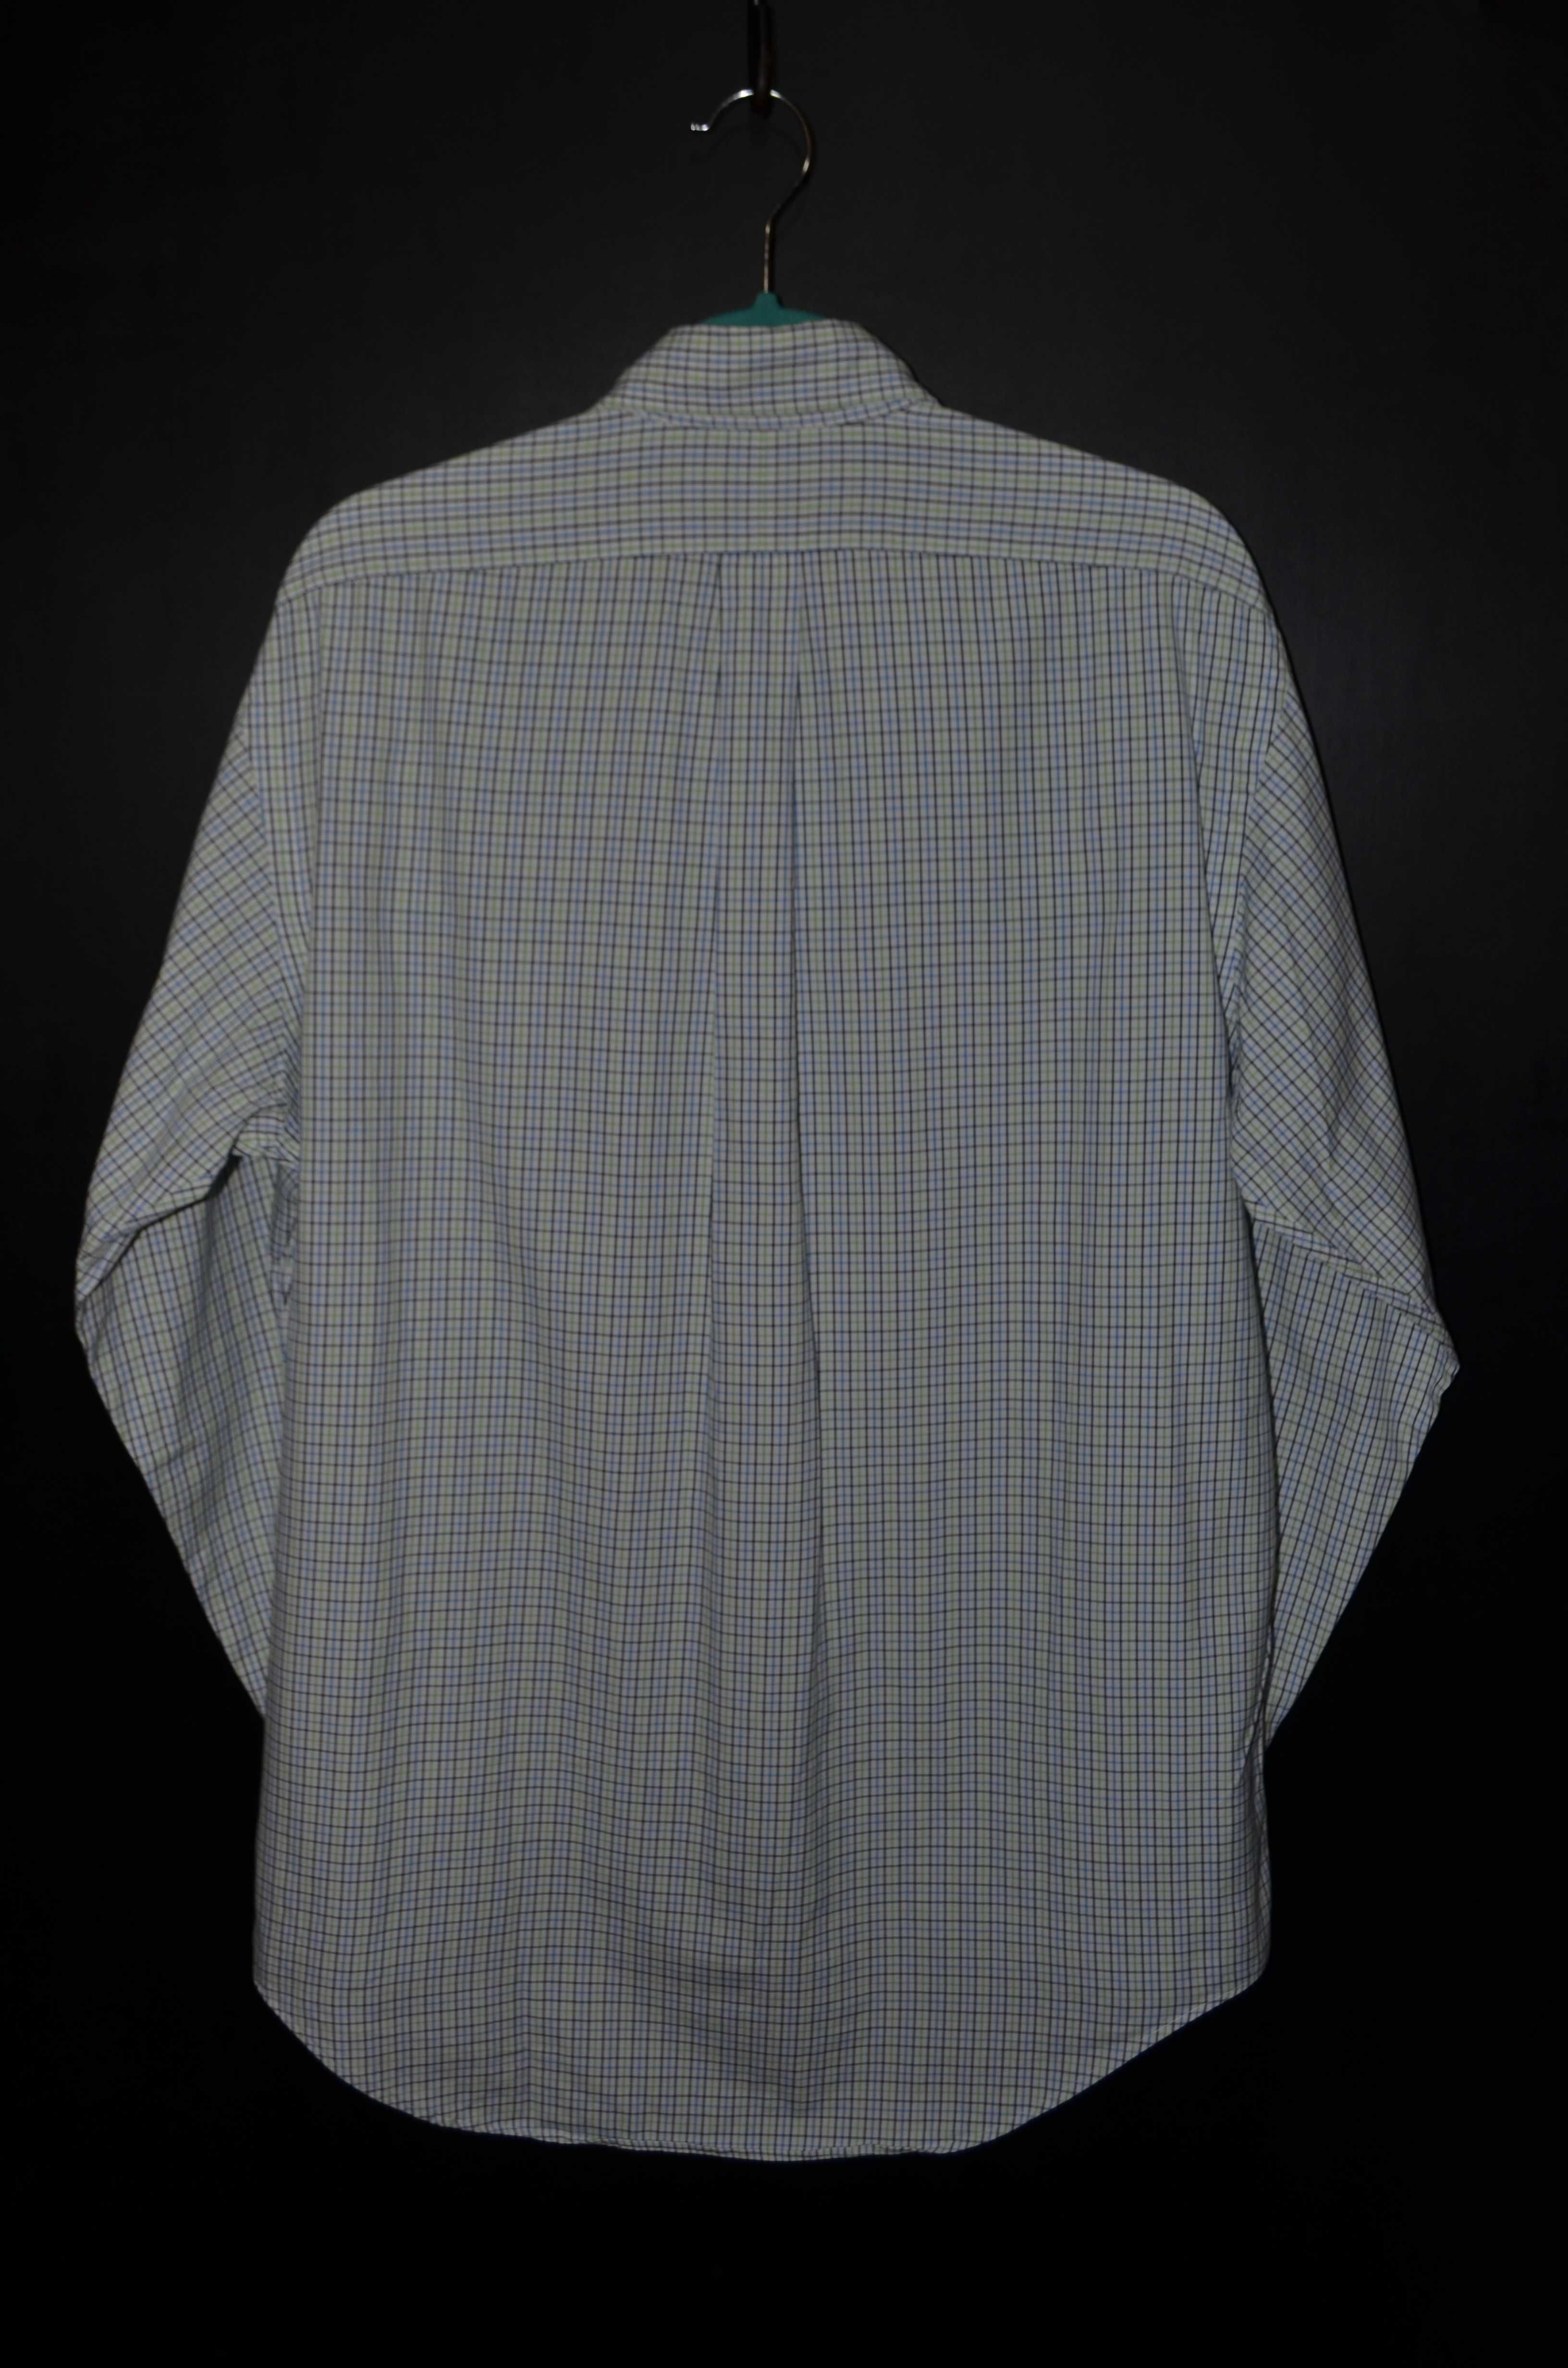 Рубашка RALPH LAUREN Men Button Down Oxford  Size 15.5 Vintage Сорочка